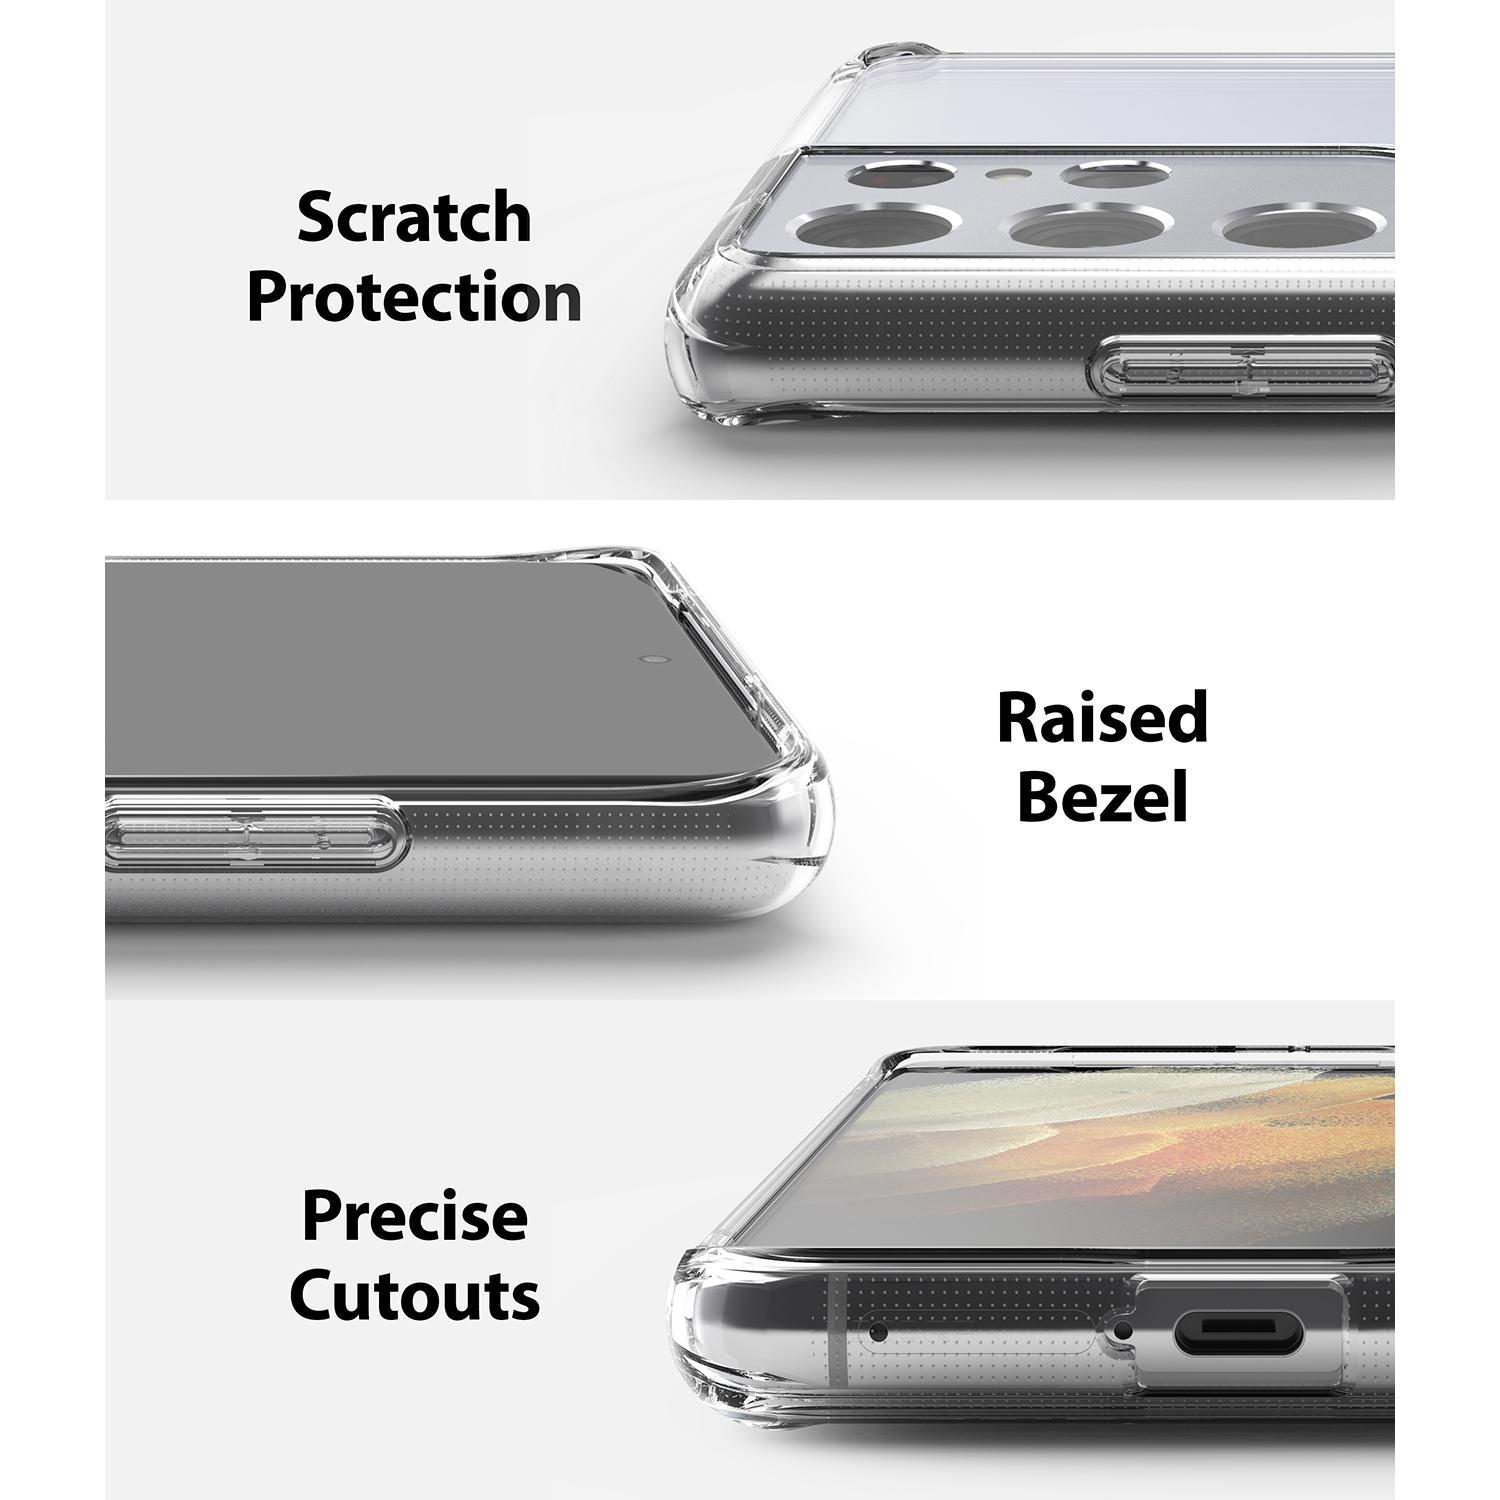 Funda Fusion Samsung Galaxy S21 Ultra Clear